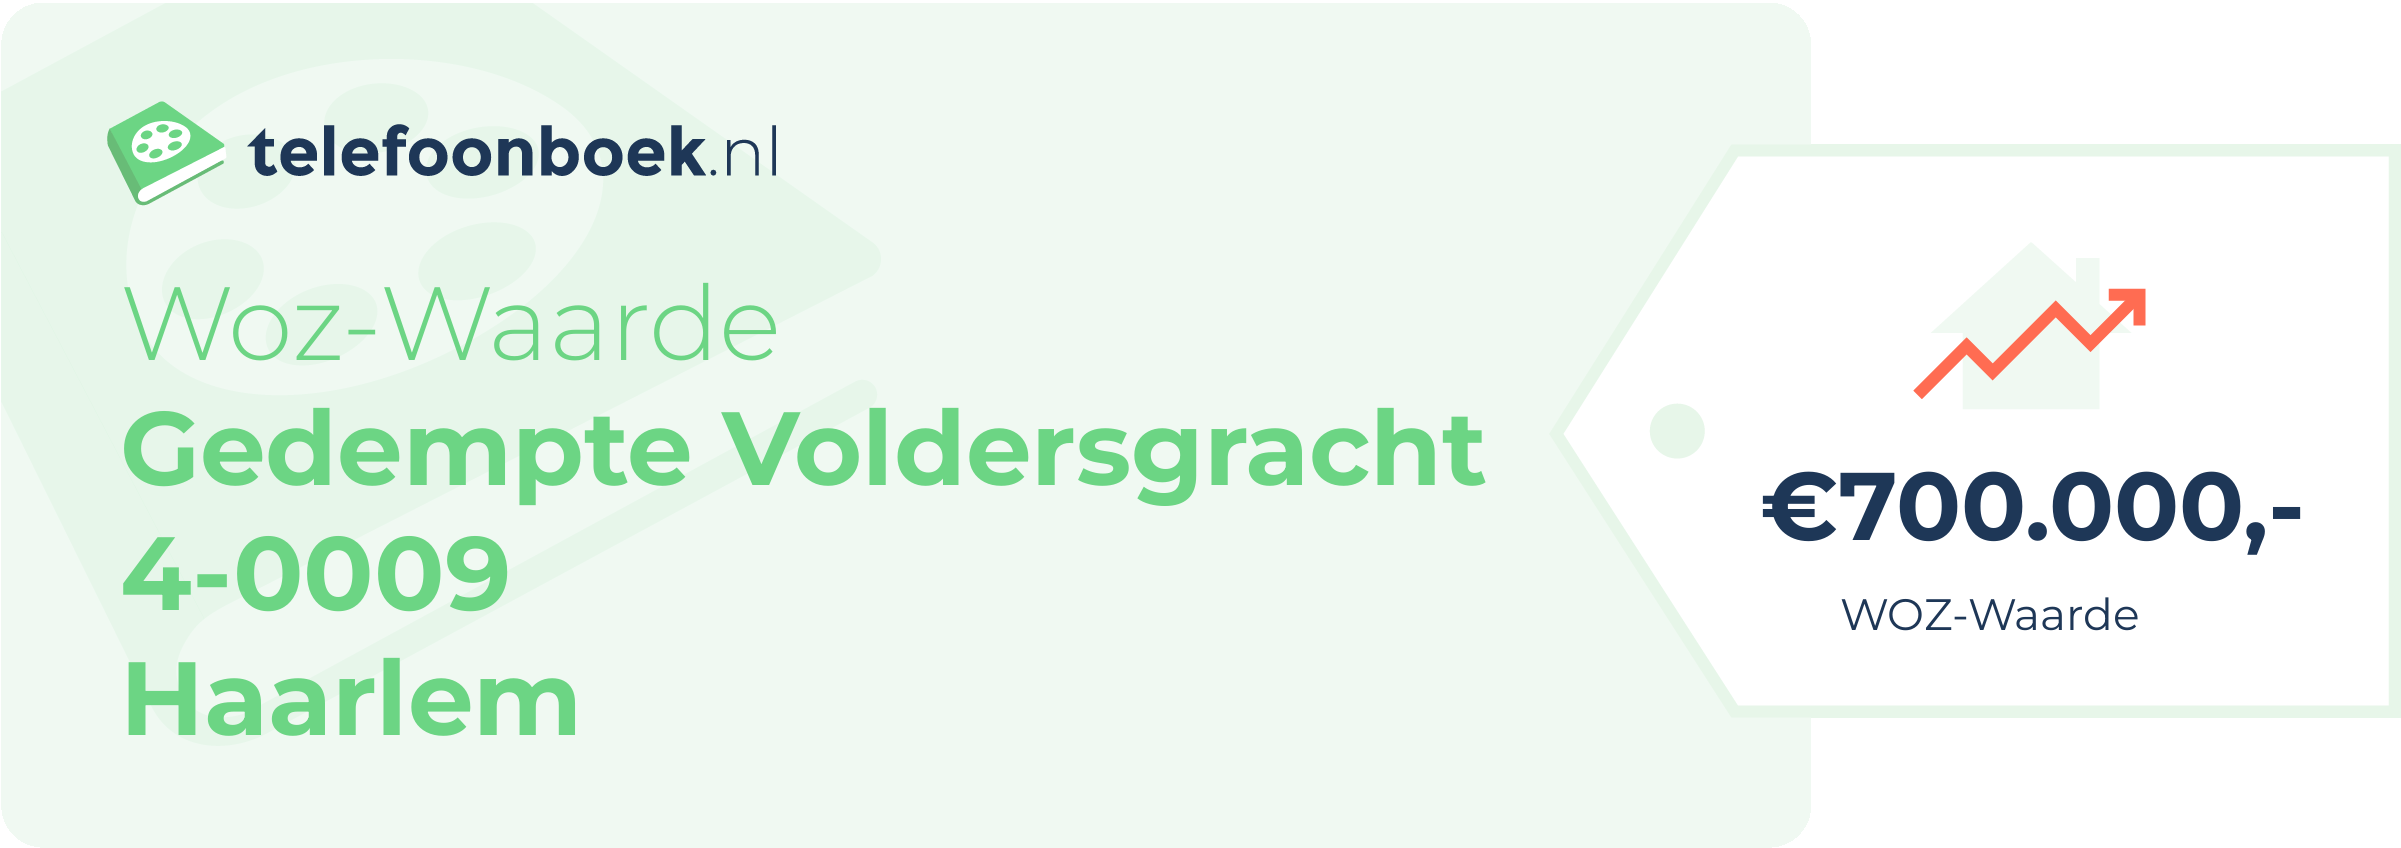 WOZ-waarde Gedempte Voldersgracht 4-0009 Haarlem